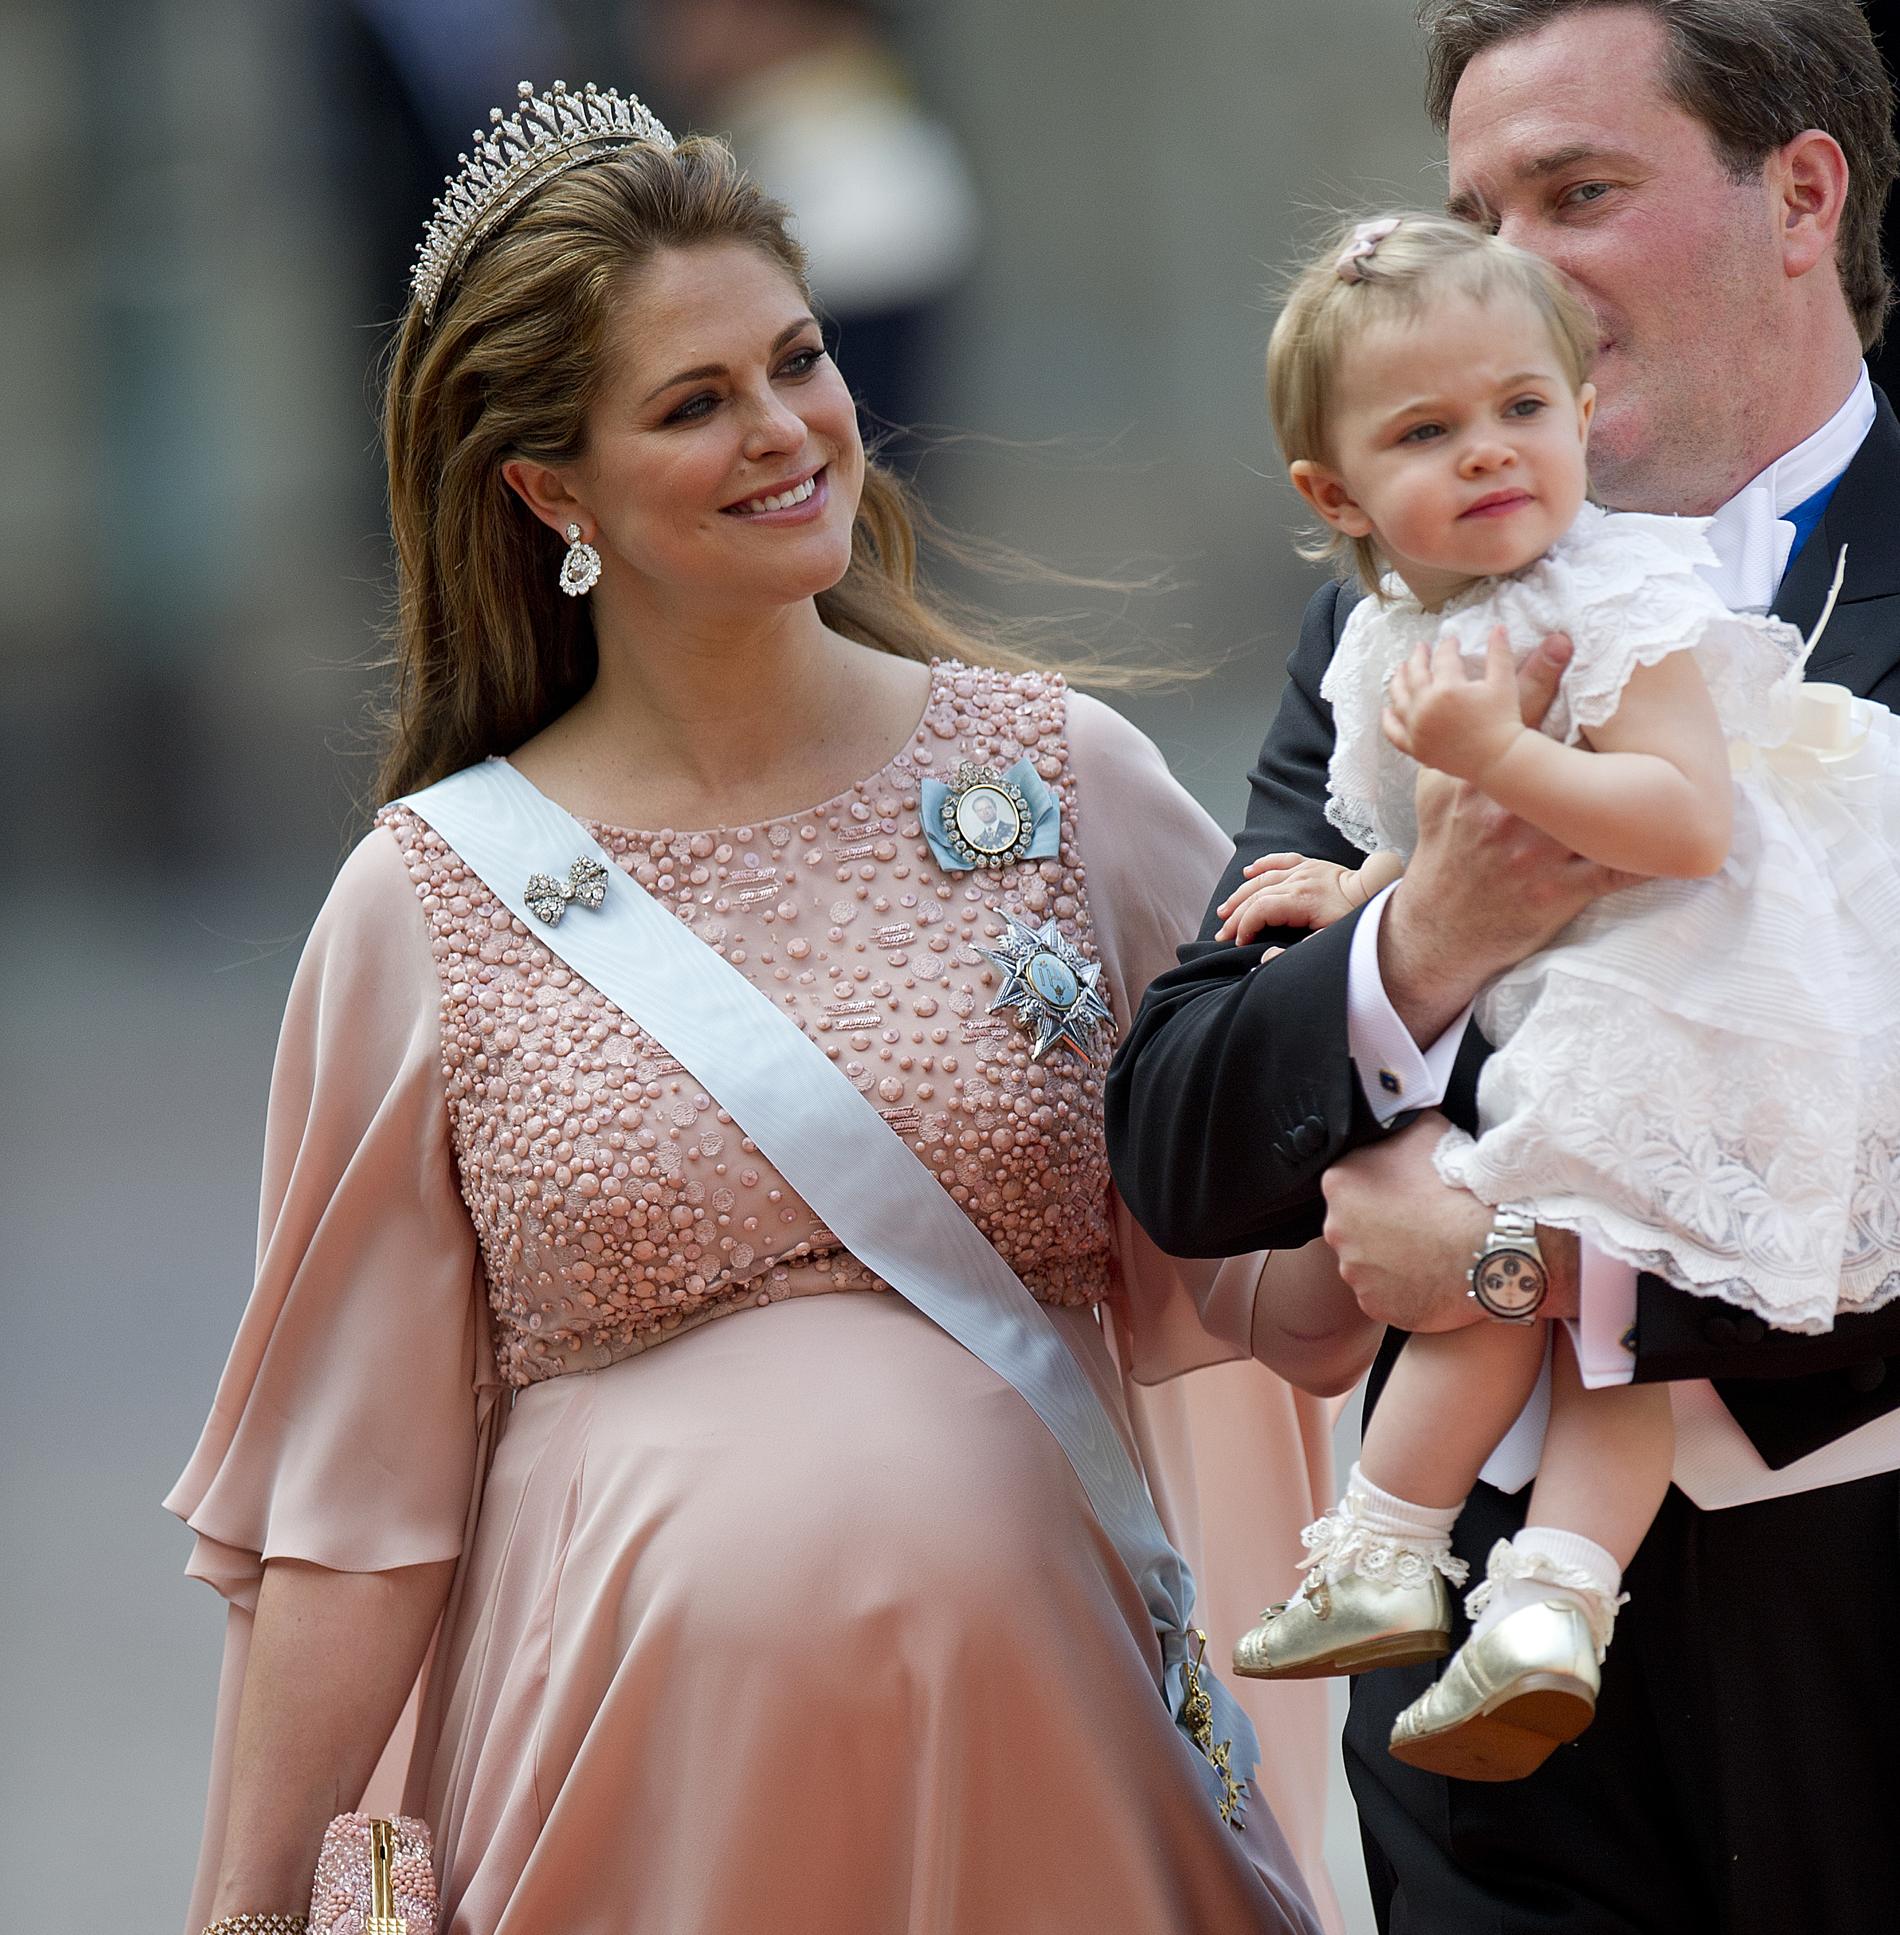 I en intervju berättar prinsessan Madeleine att hon var öppen tre centimeter under prinsessan Sofia och prins Carl Philips bröllop. Två dagar senare föddes prins Nicolas.